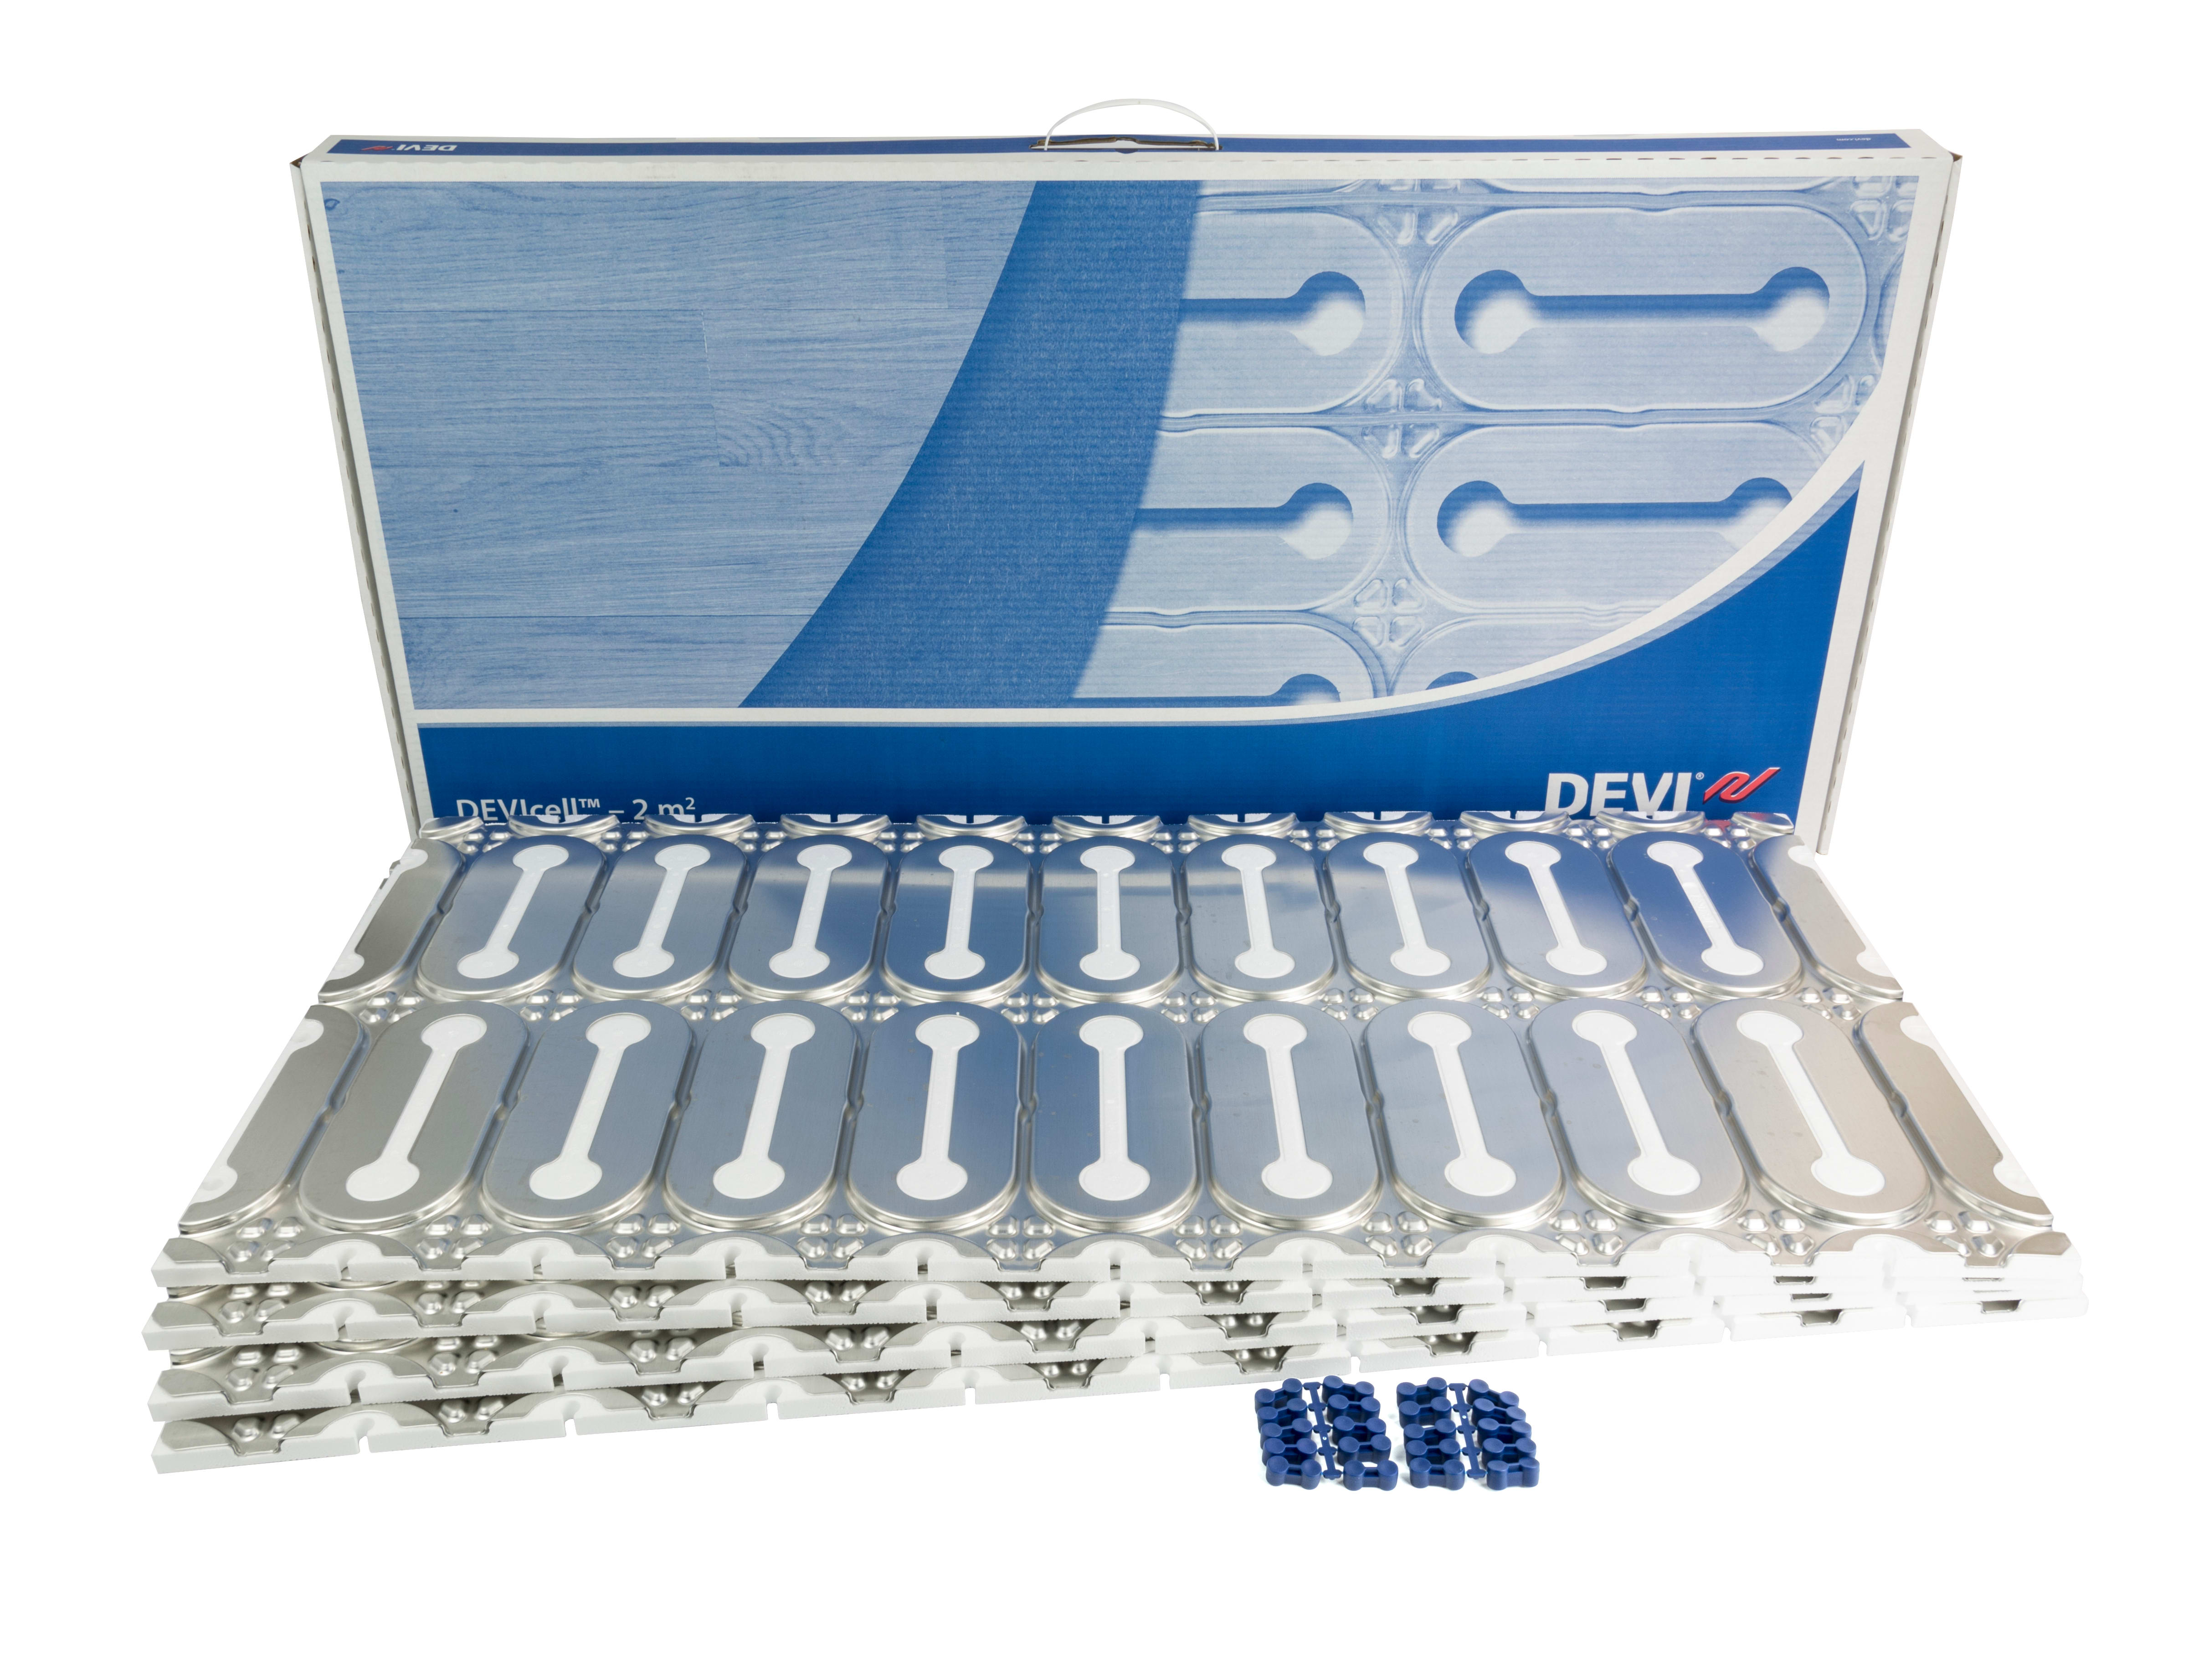 DEVI - DEVICELL DRY  5M2 isolasjonsplate for varmekabel